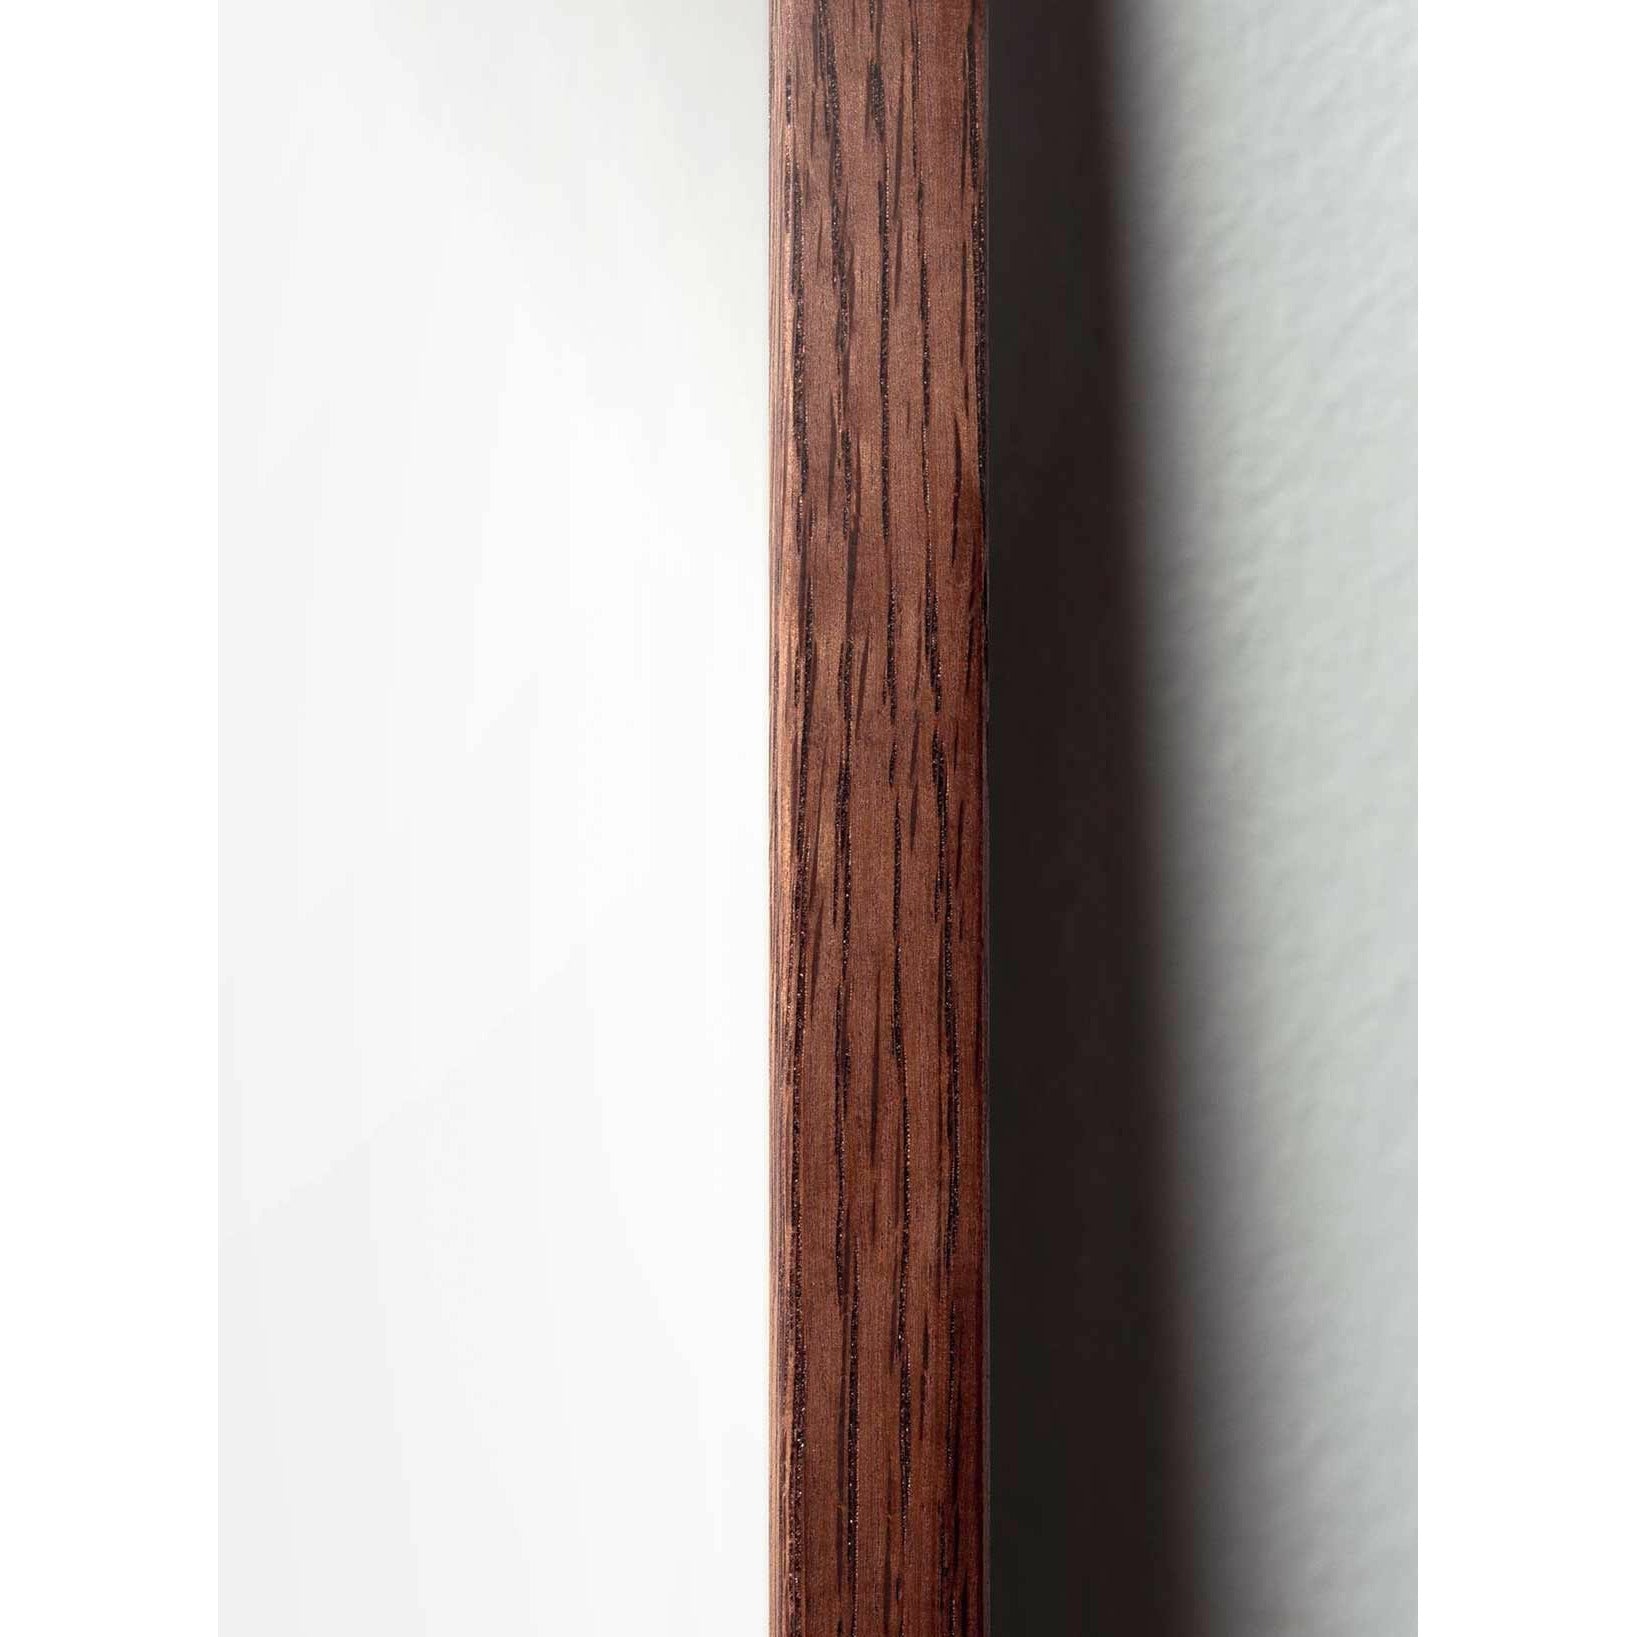 Póster clásico de BrainChild Teddy Bear, marco de madera oscura A5, fondo blanco